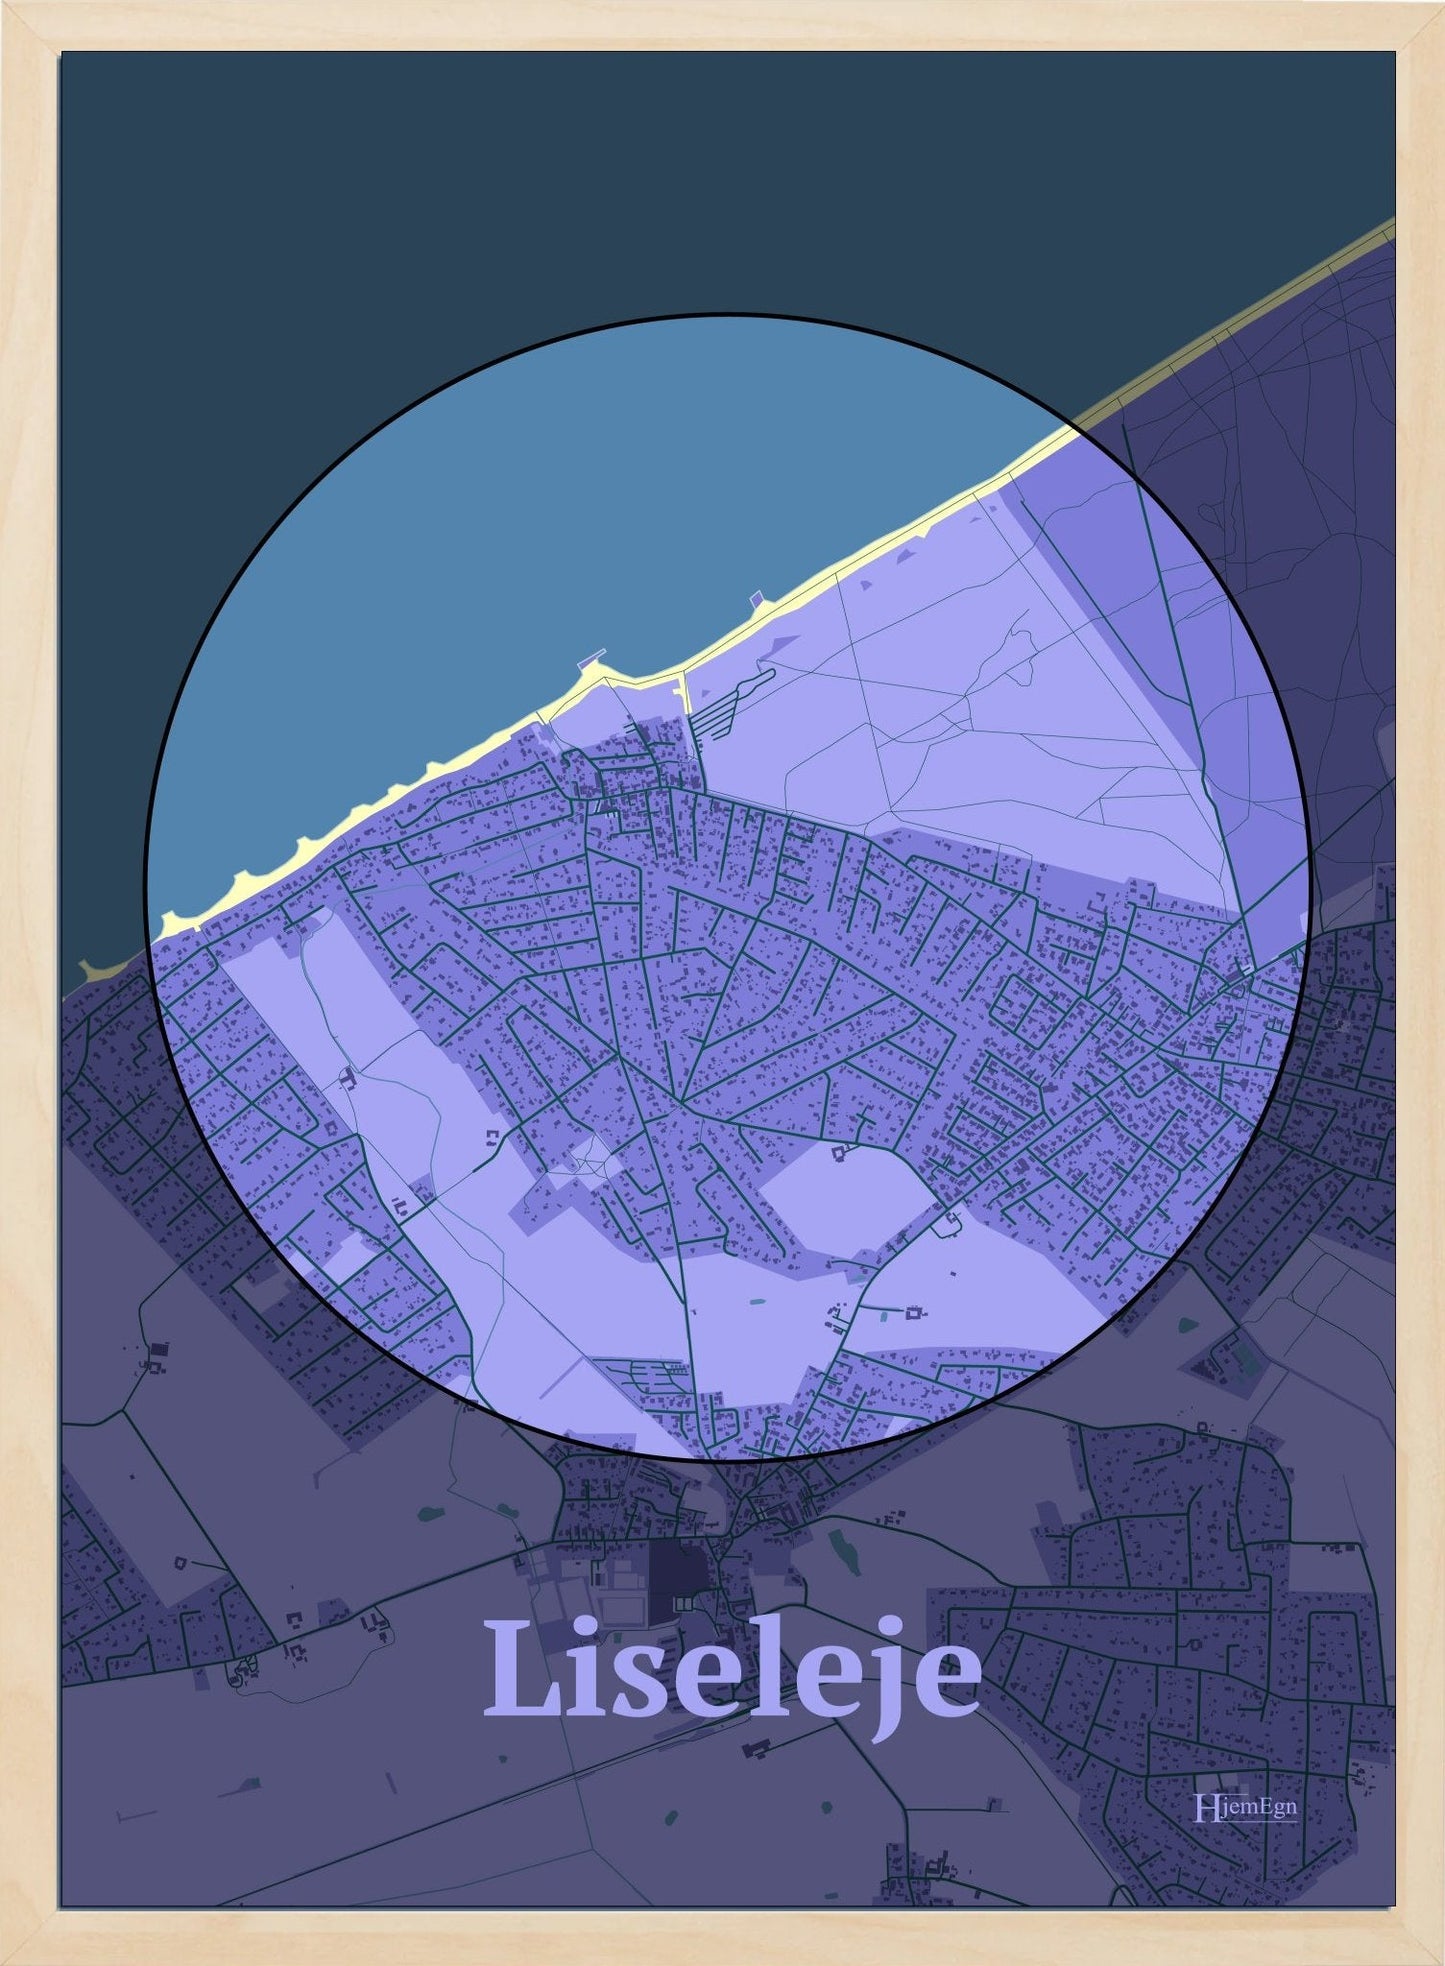 Liseleje plakat i farve pastel lilla og HjemEgn.dk design centrum. Design bykort for Liseleje